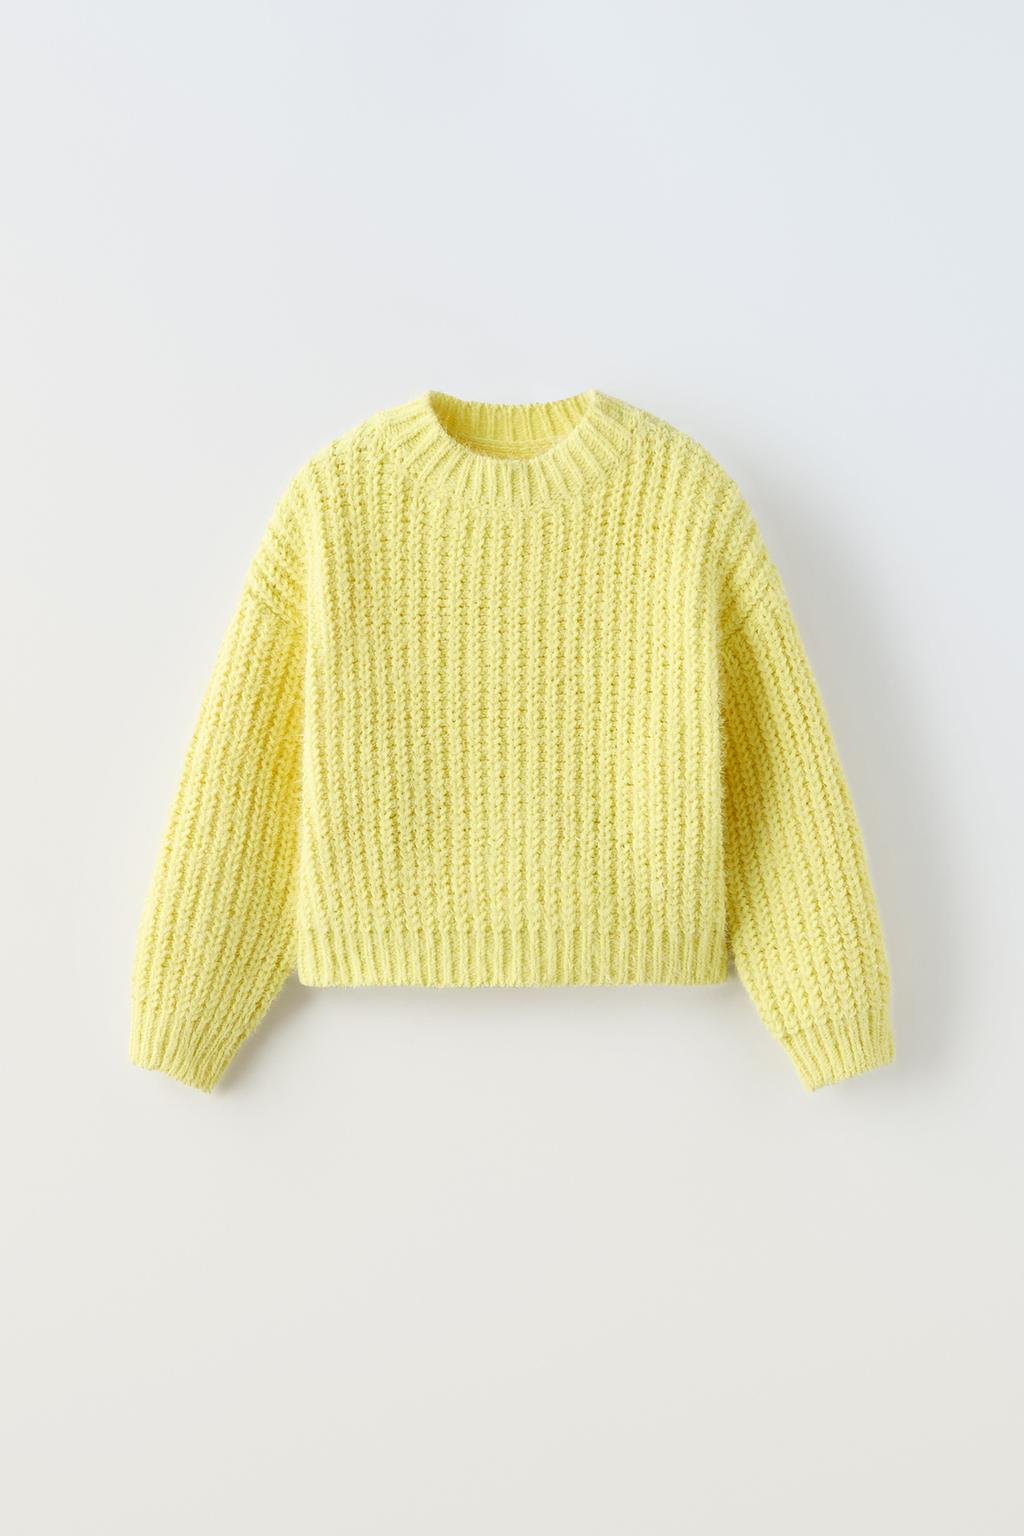 Трикотажный свитер ZARA, желтый свитер мужской с круглым вырезом повседневный приталенный пуловер с длинными рукавами теплый вязаный свитер зима